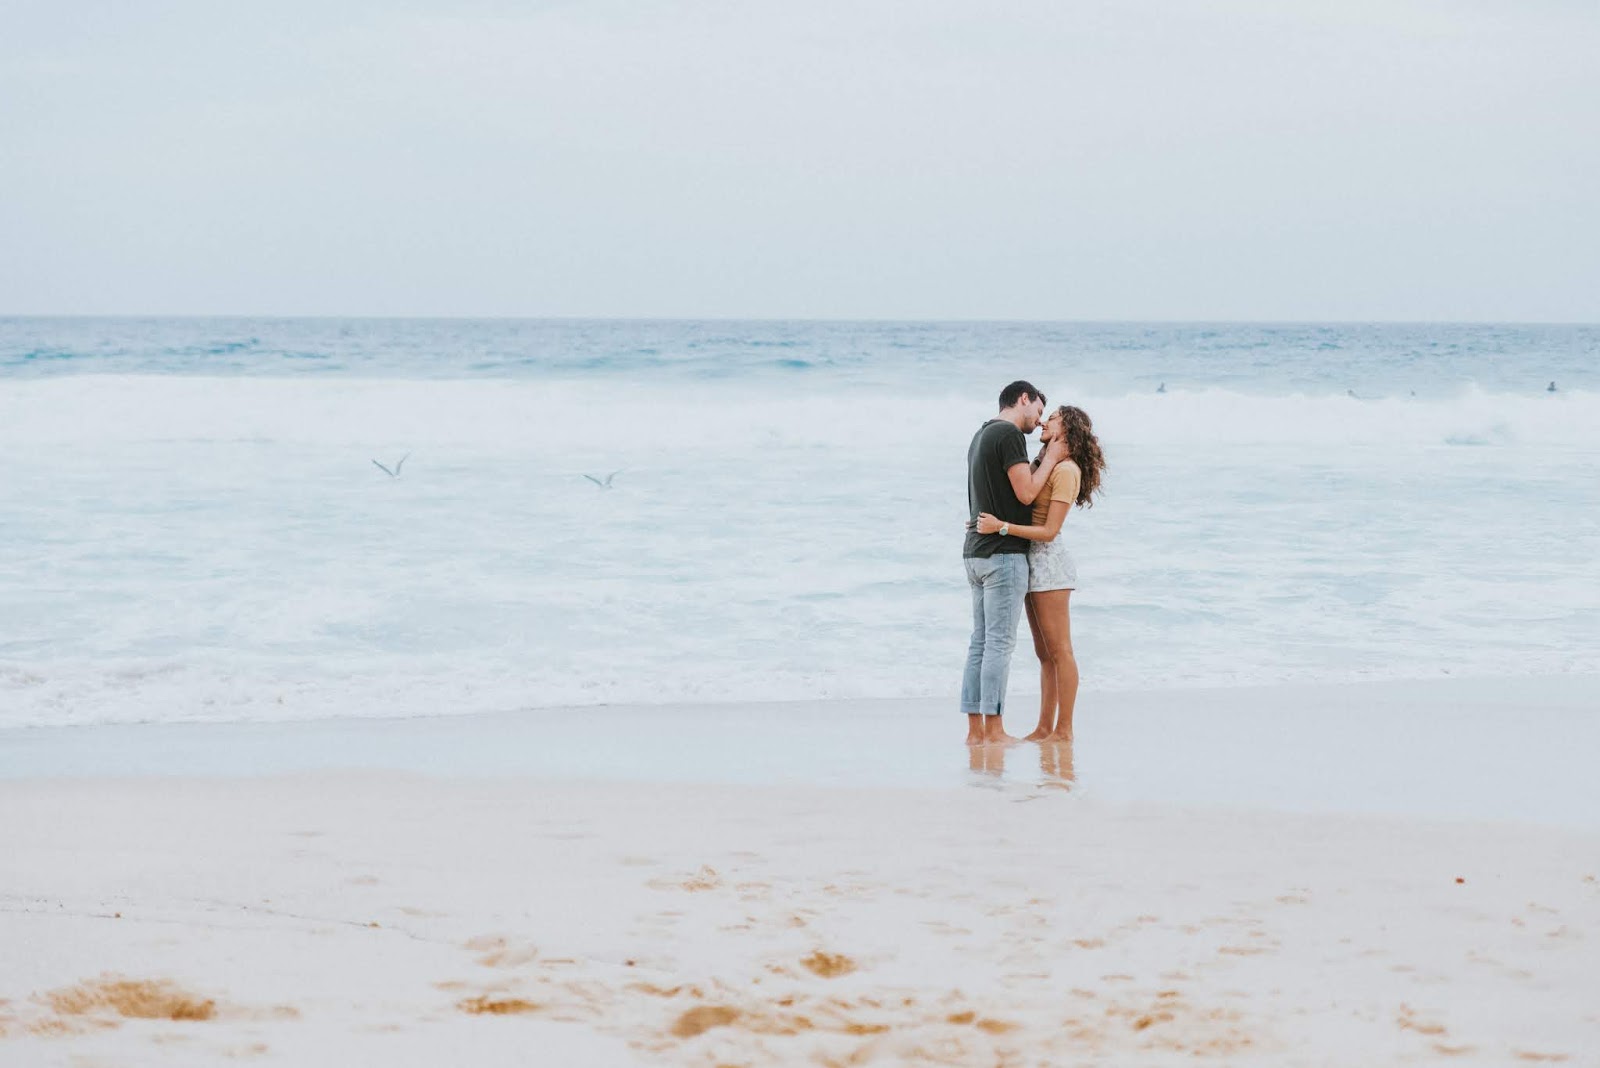 Cặp đôi đang hôn nhau ở bãi biển